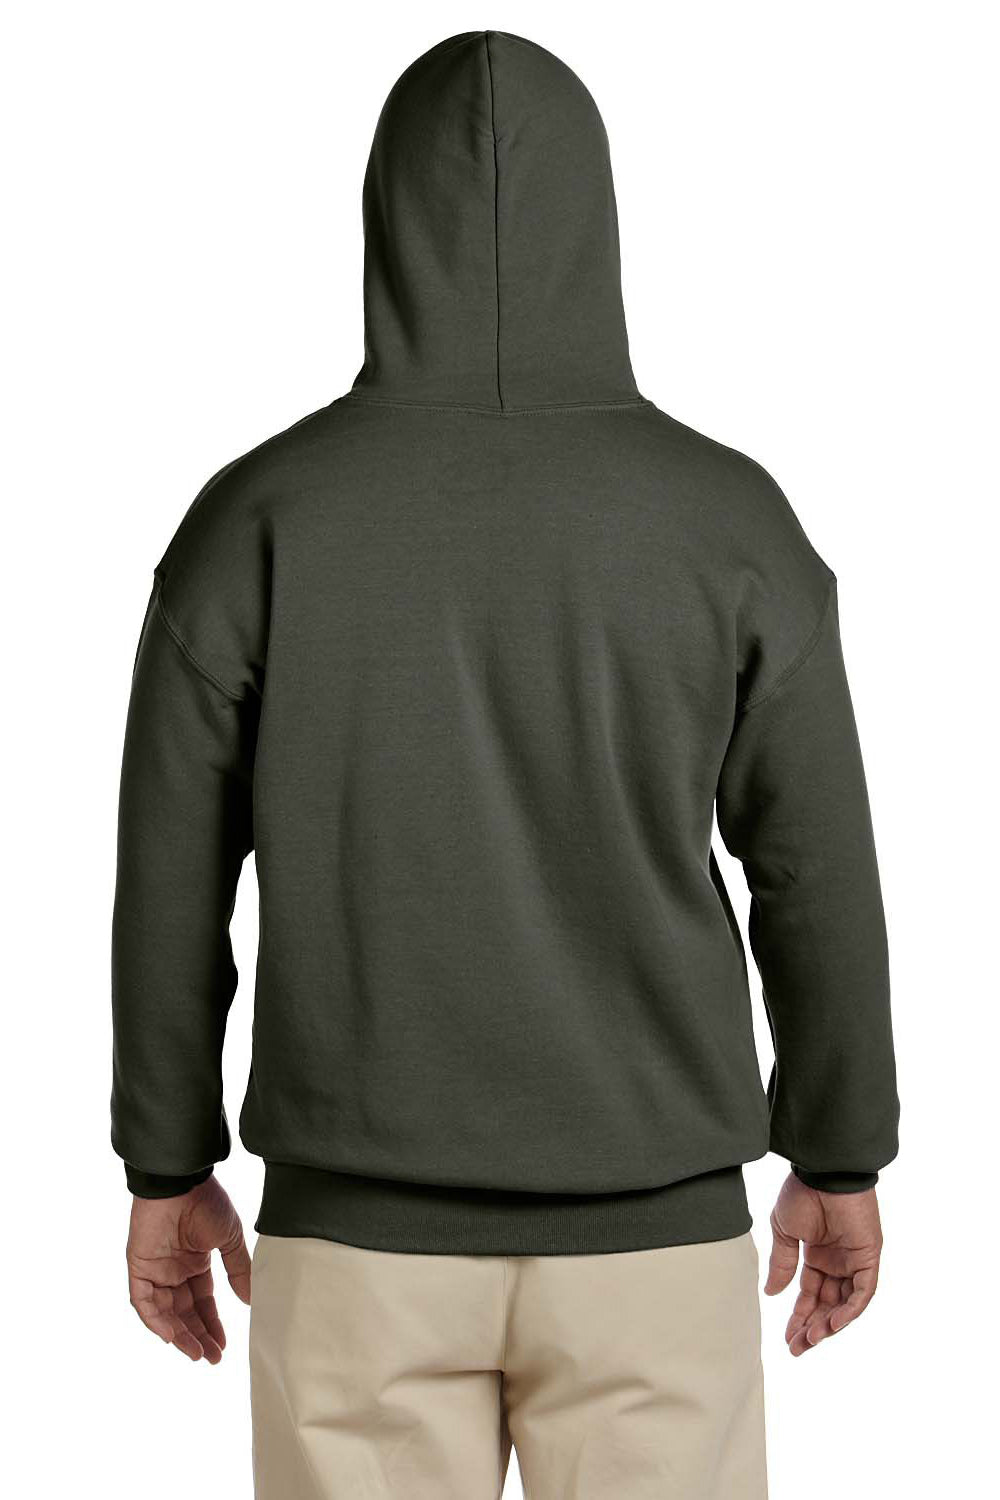 Gildan G185 Mens Hooded Sweatshirt Hoodie Military Green Back